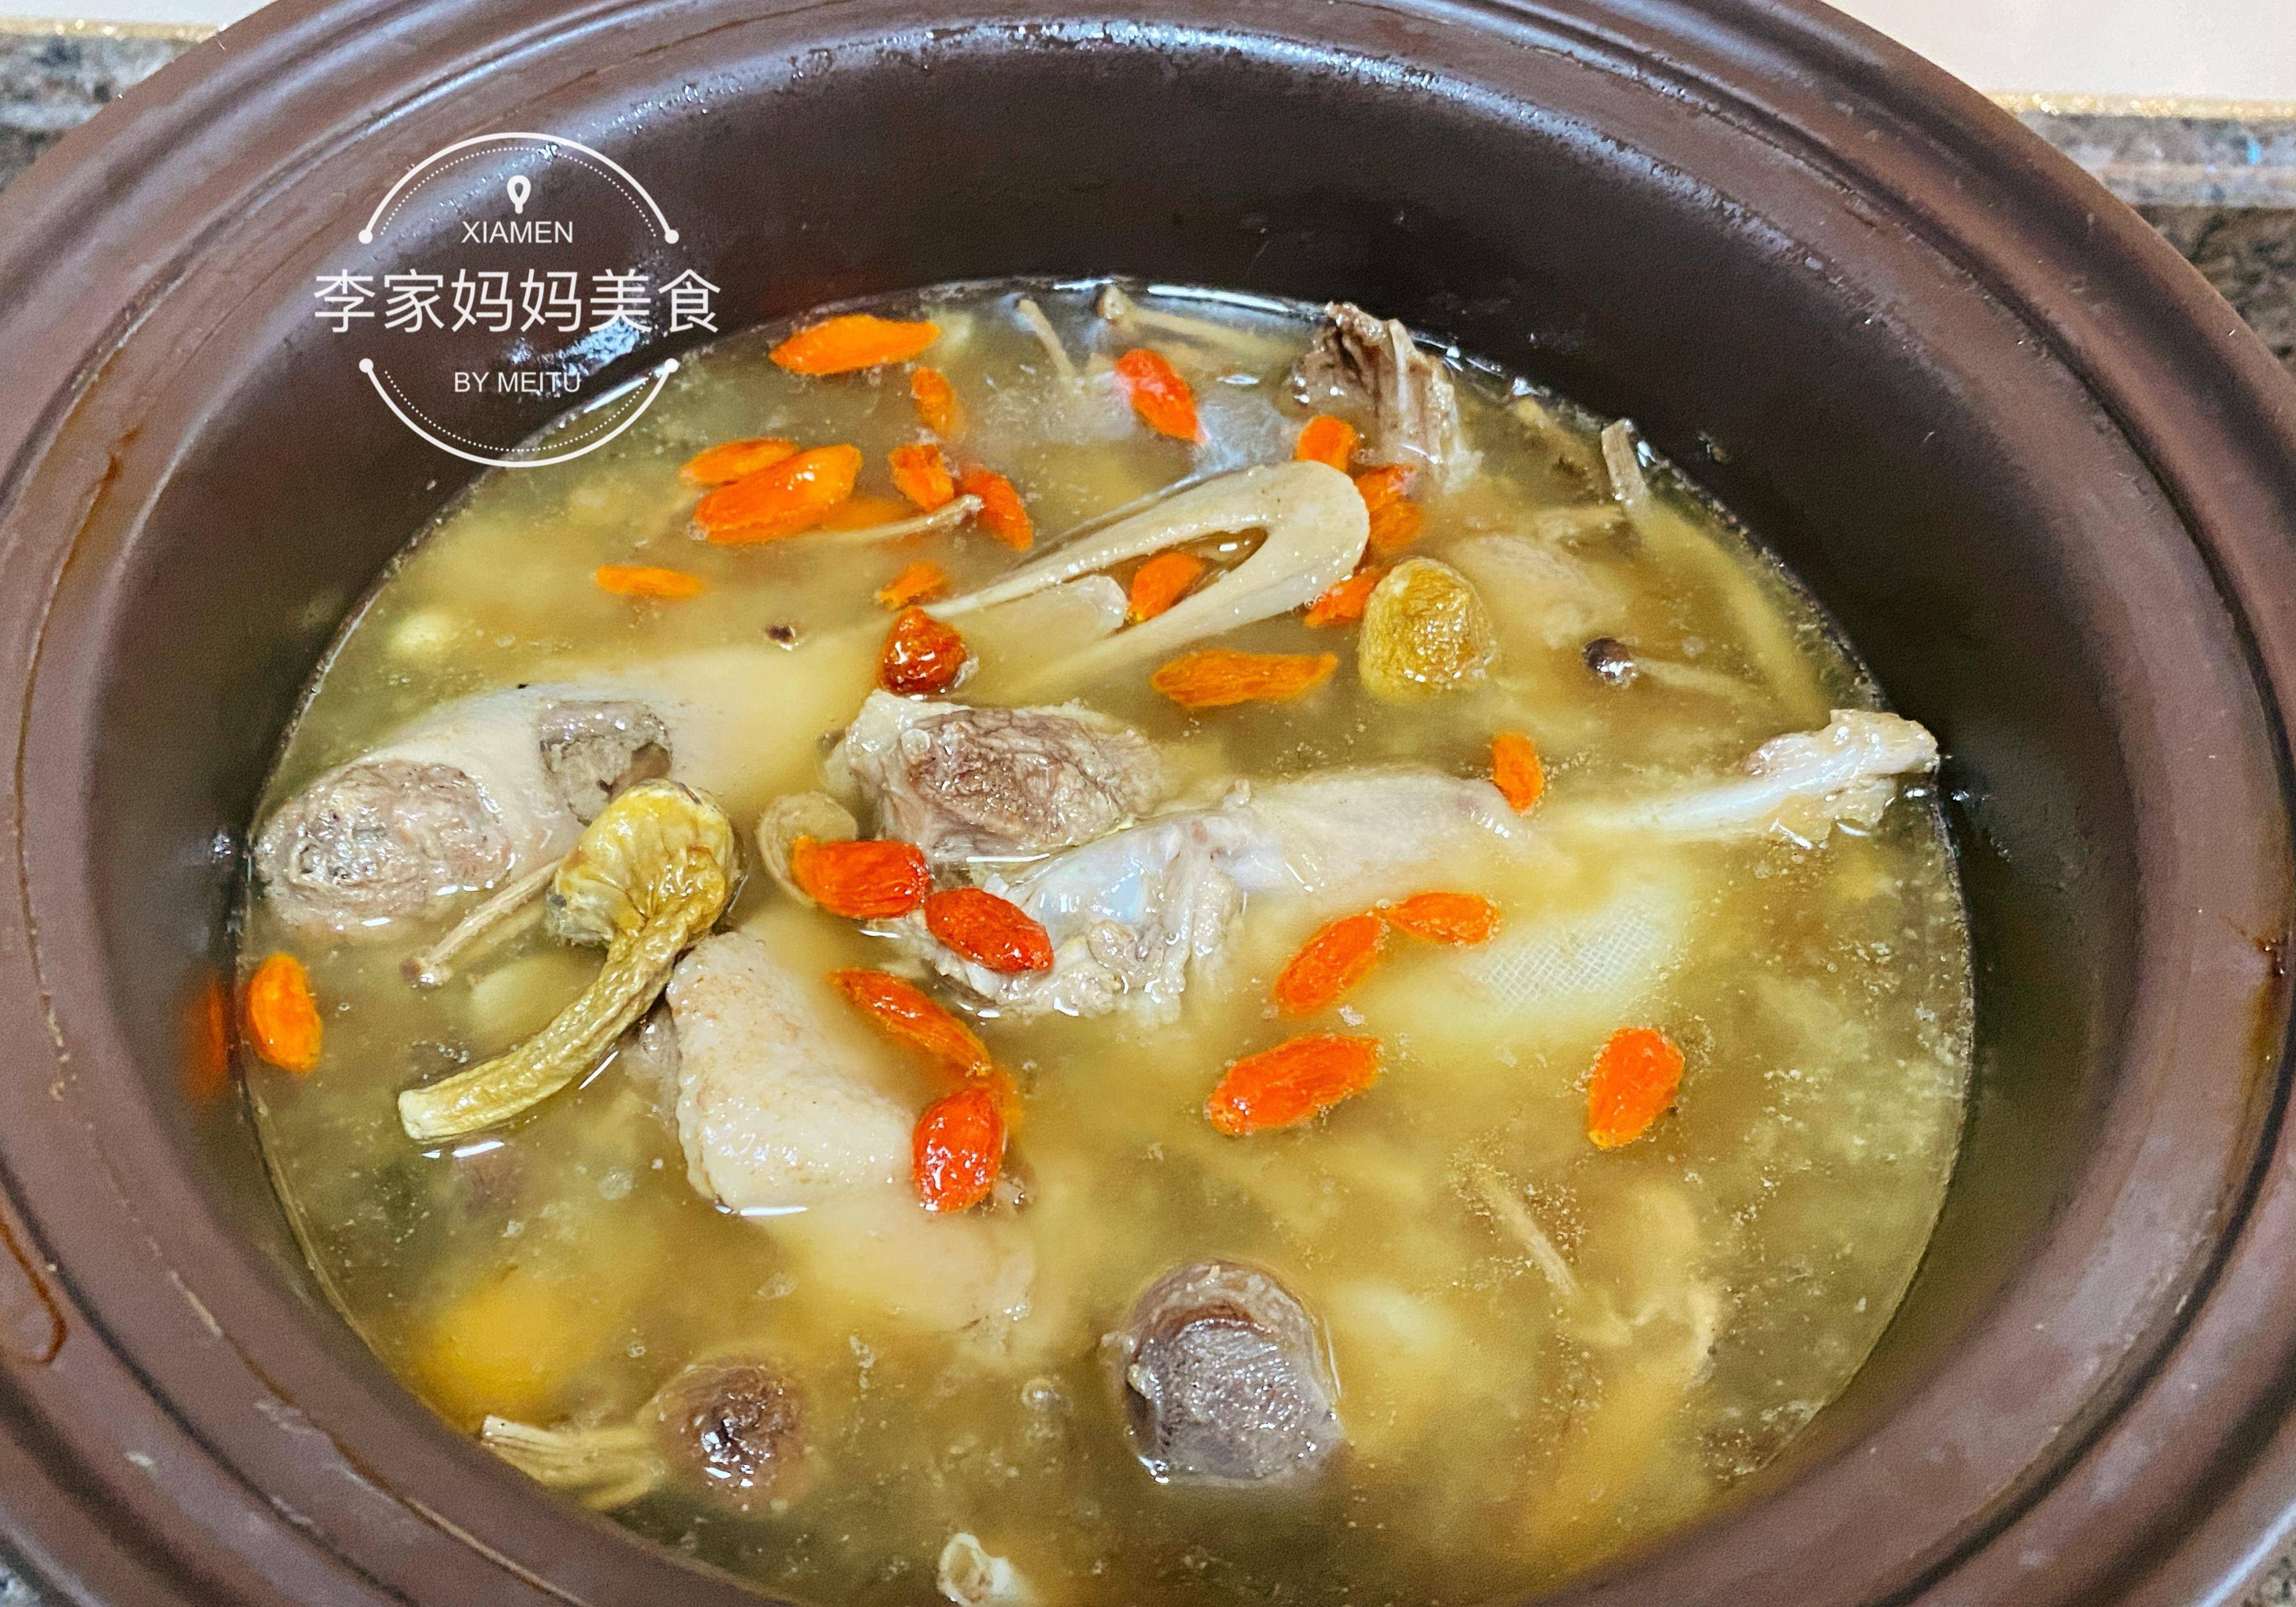 鸭肉鲜嫩可口,美味多汁,加了茶树菇的汤特别浓厚,香气十足,喝上一碗